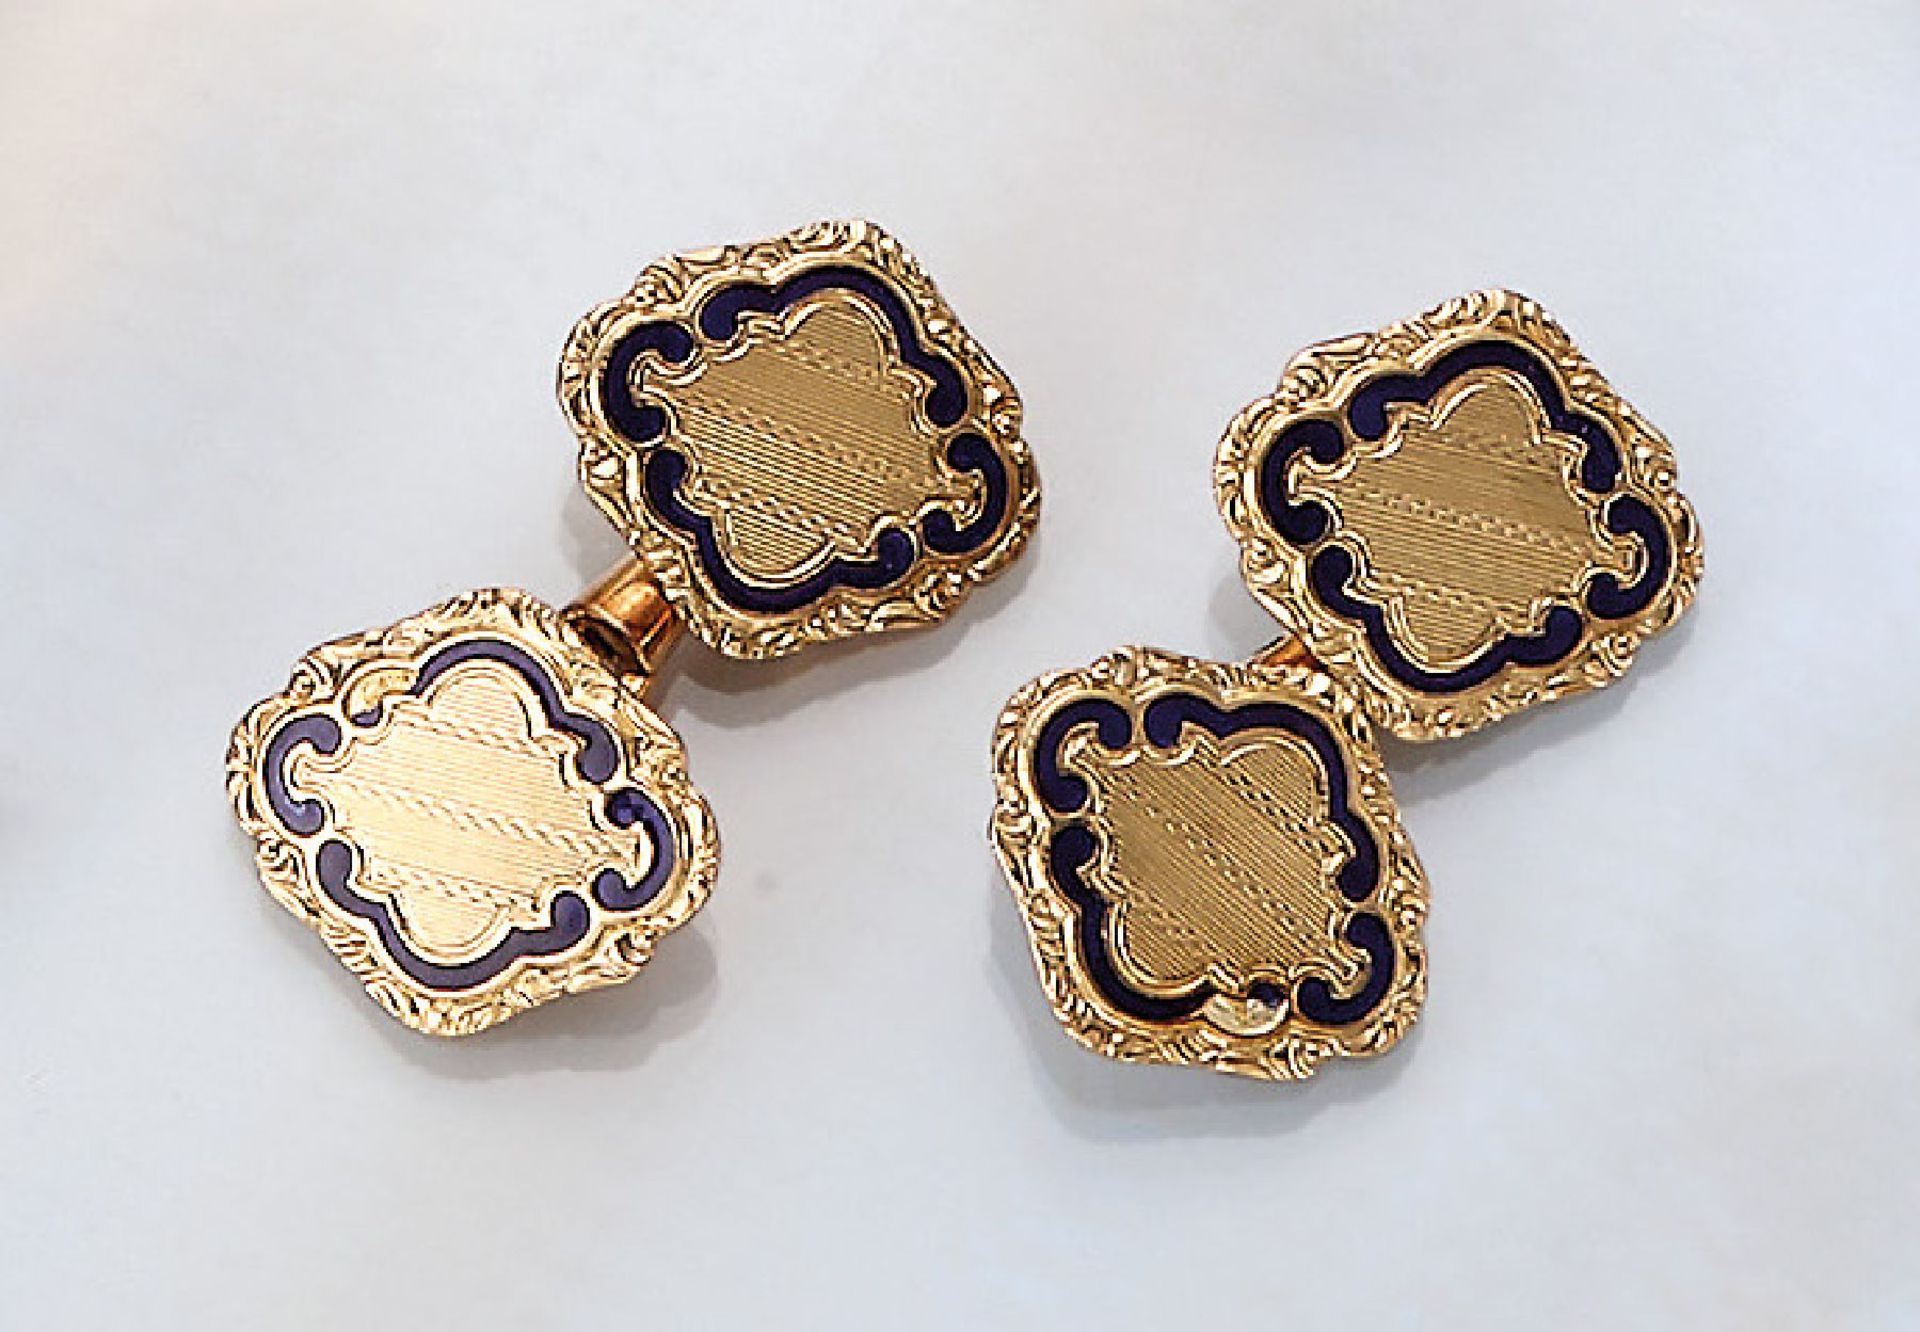 14 kt gold cufflinks, ca. 1900, YG 585/000 ,blue enameled (flawed), manufacturer's brand